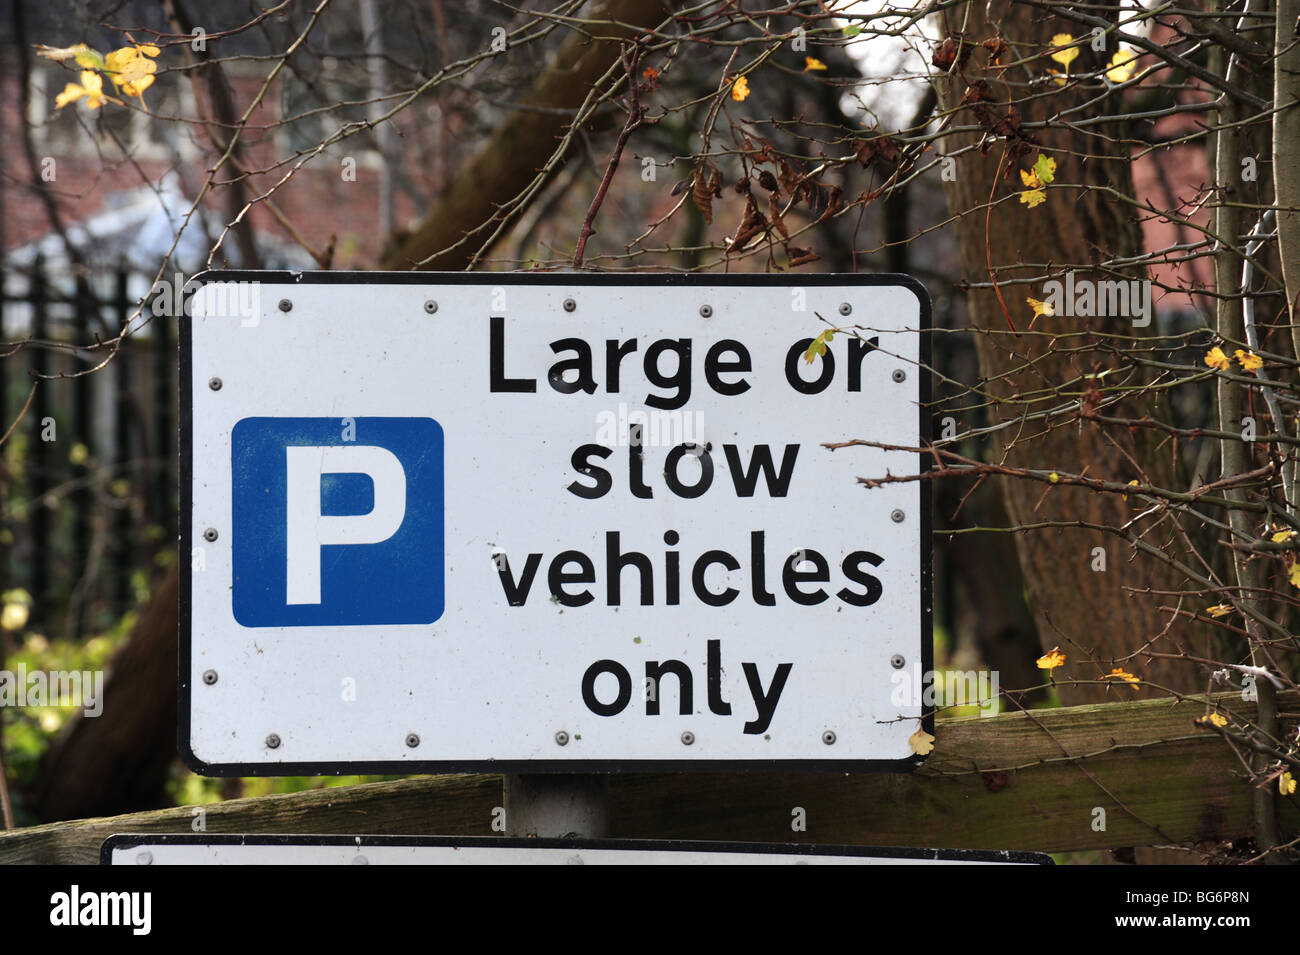 Large vehicle parking sign Stock Photo